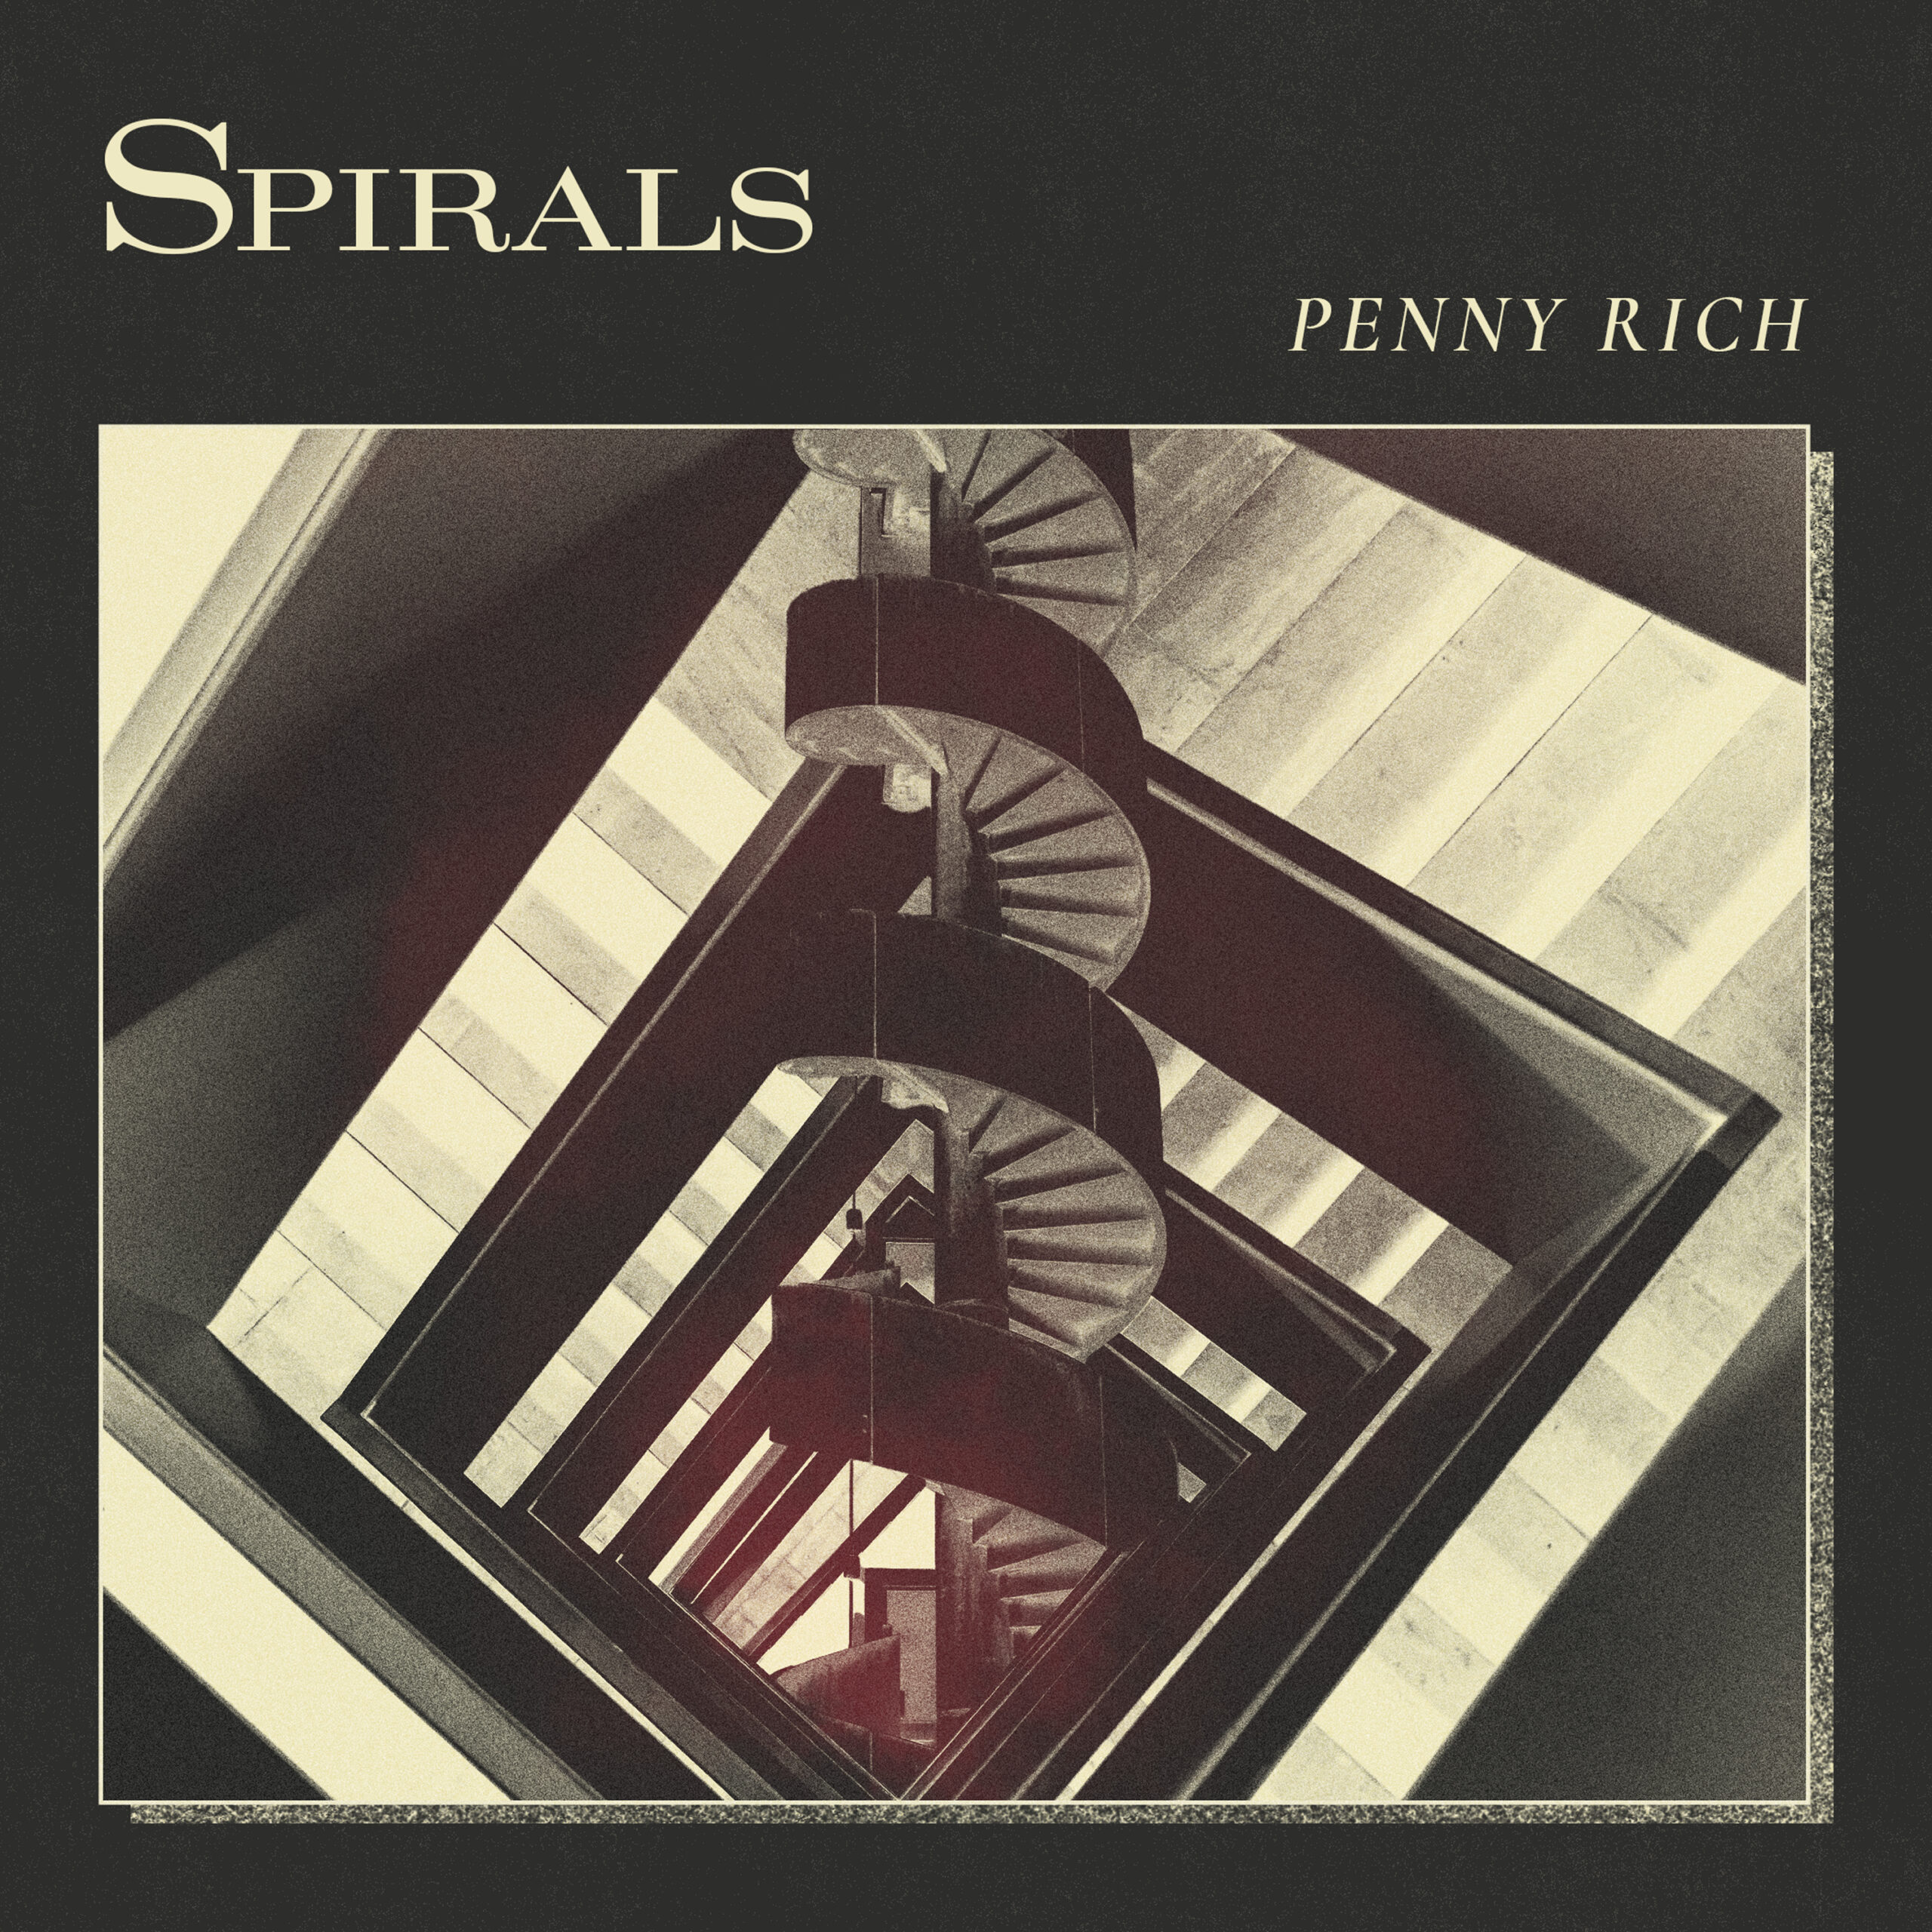 LISTEN: “Spirals” by Penny Rich